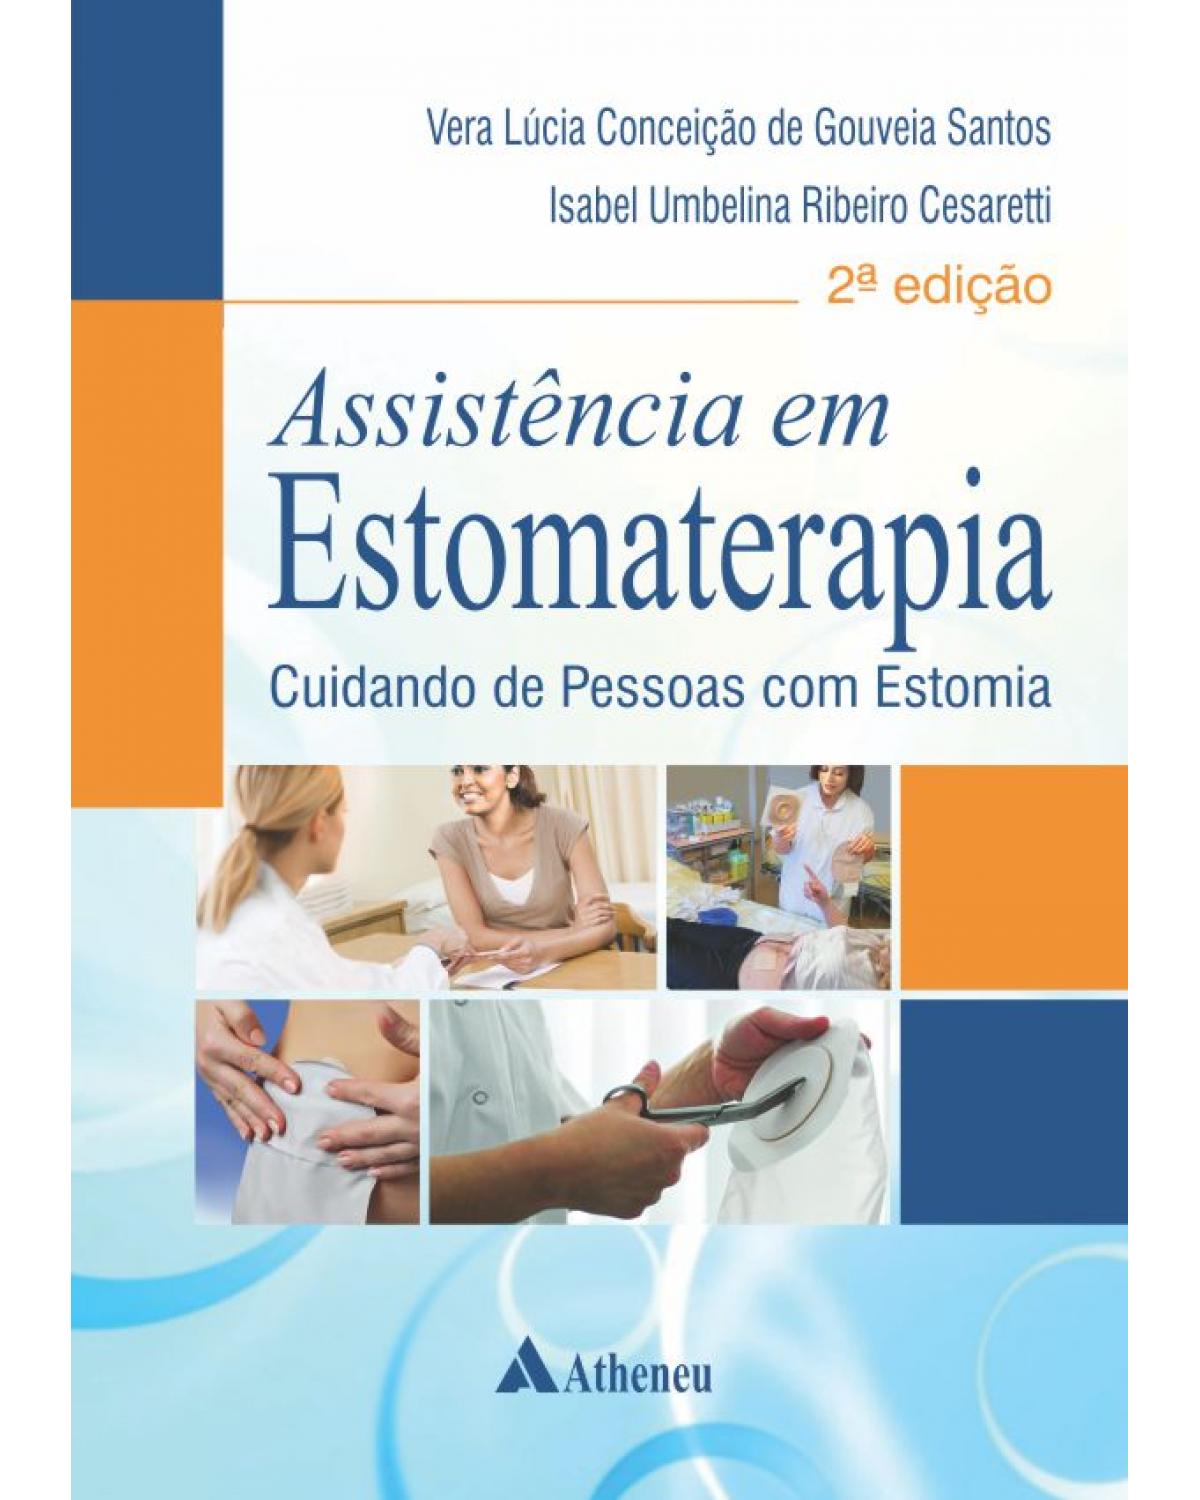 Assistência em estomaterapia - cuidando de pessoas com estomia - 2ª Edição | 2015